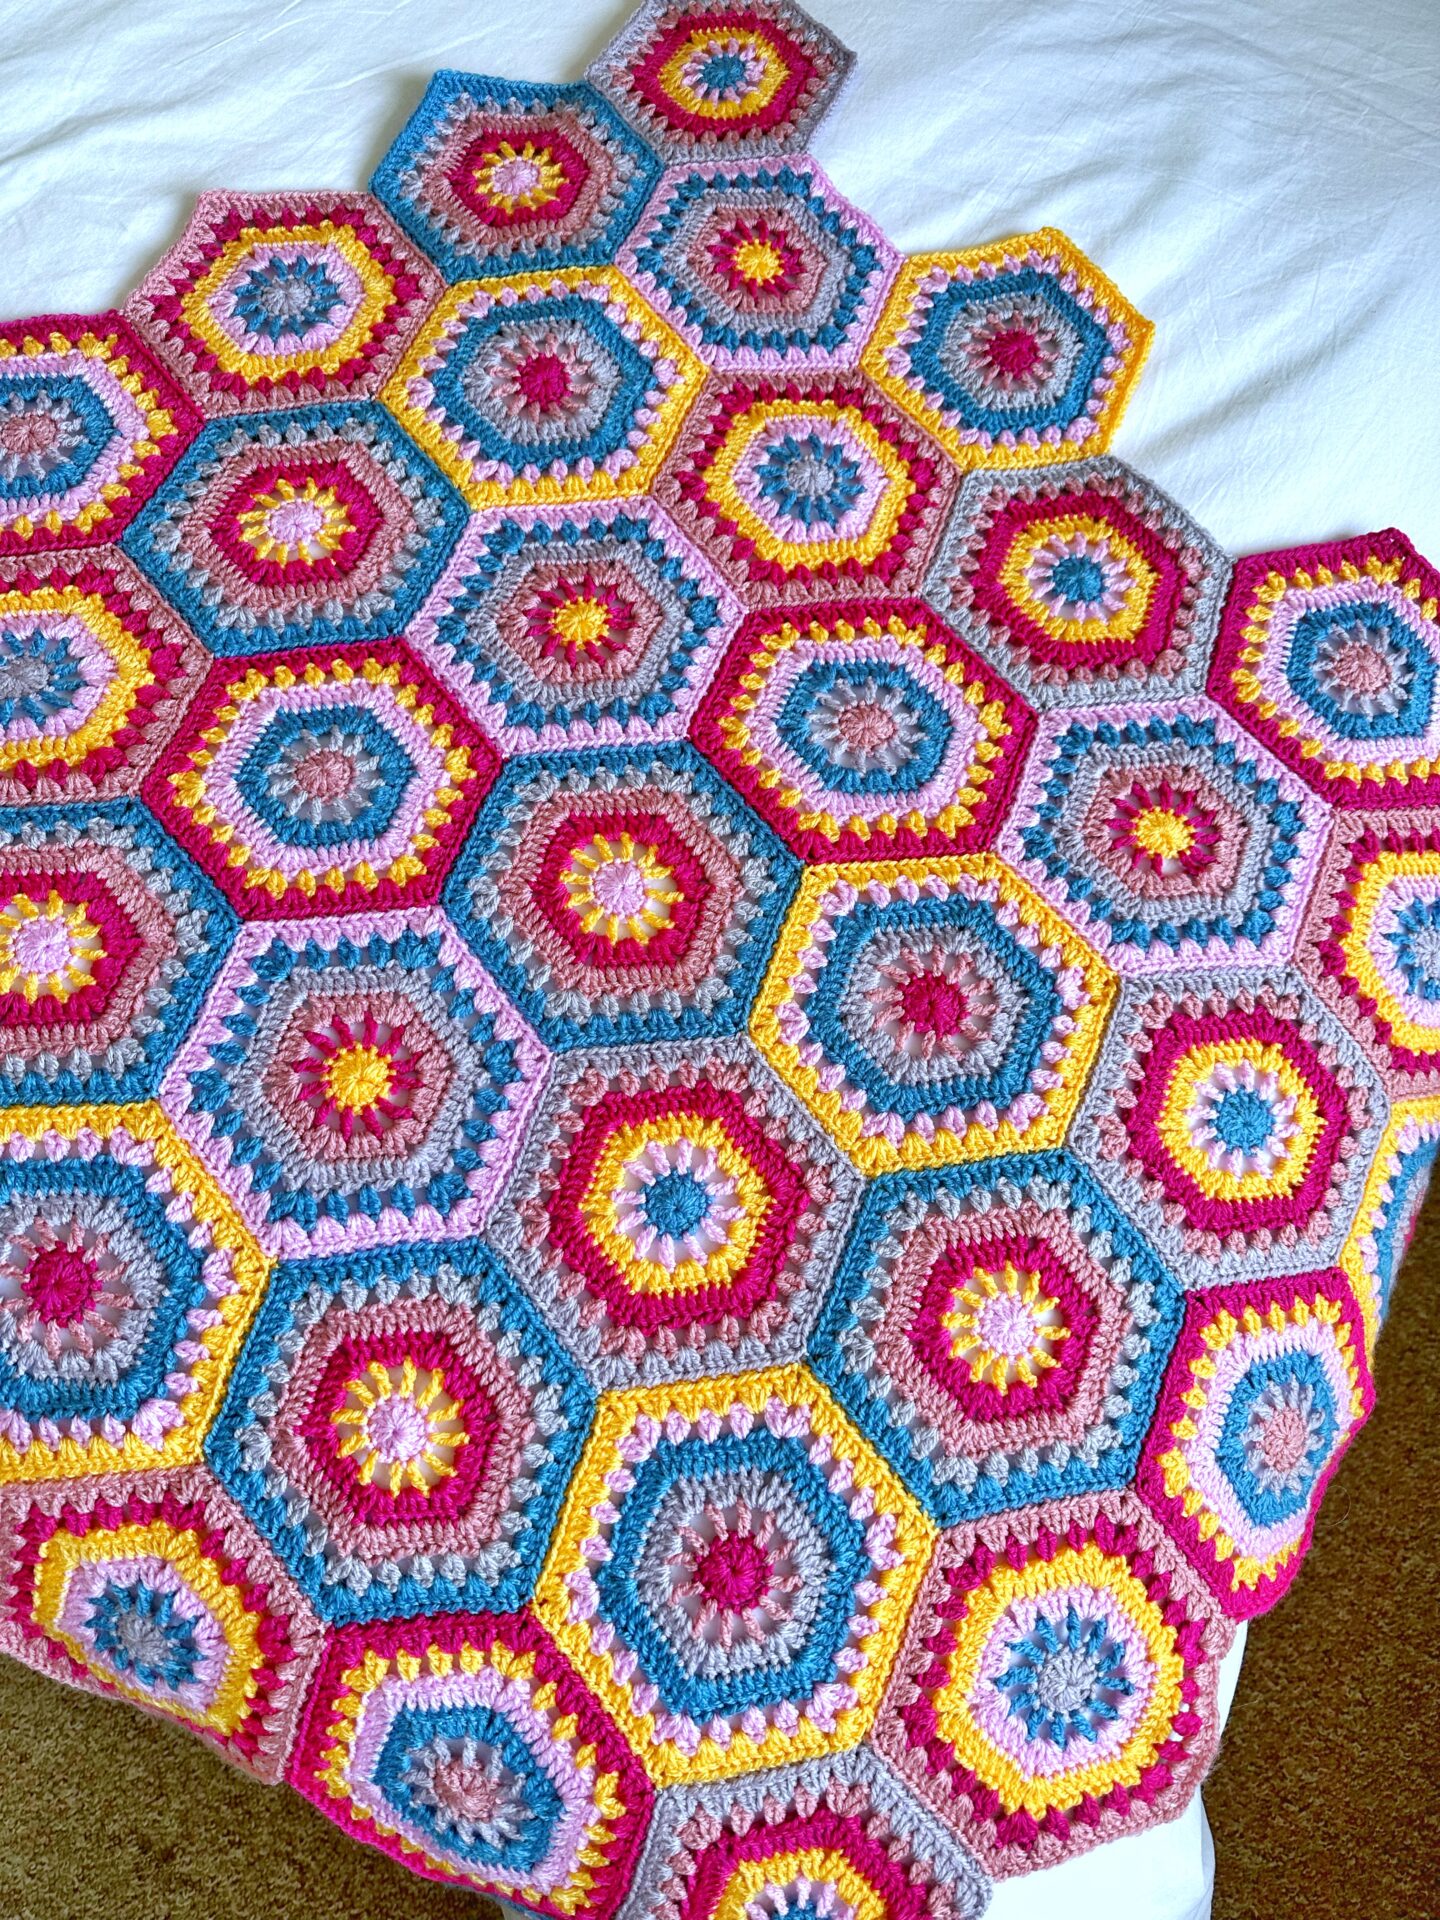 Free Crochet Pattern - Hexagon Crochet Blanket